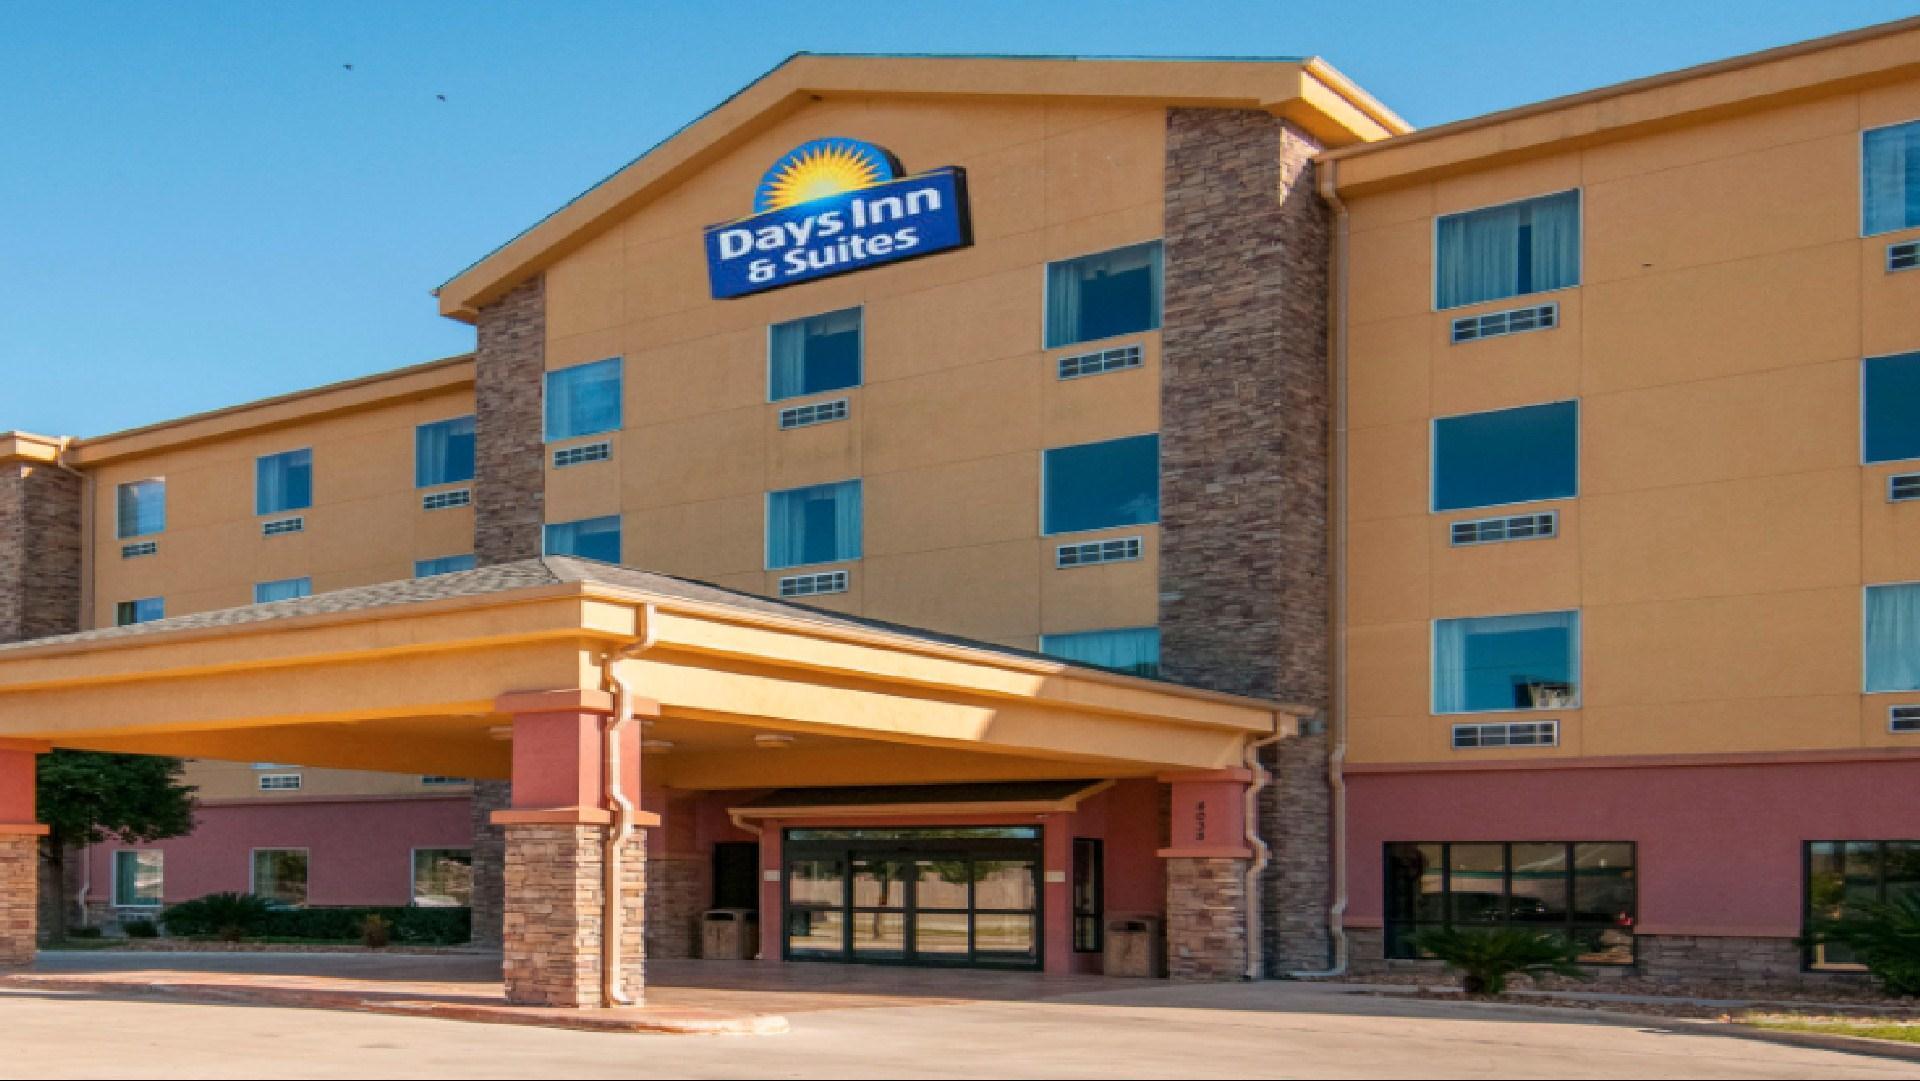 Days Inn & Suites by Wyndham San Antonio near AT&T Center in San Antonio, TX